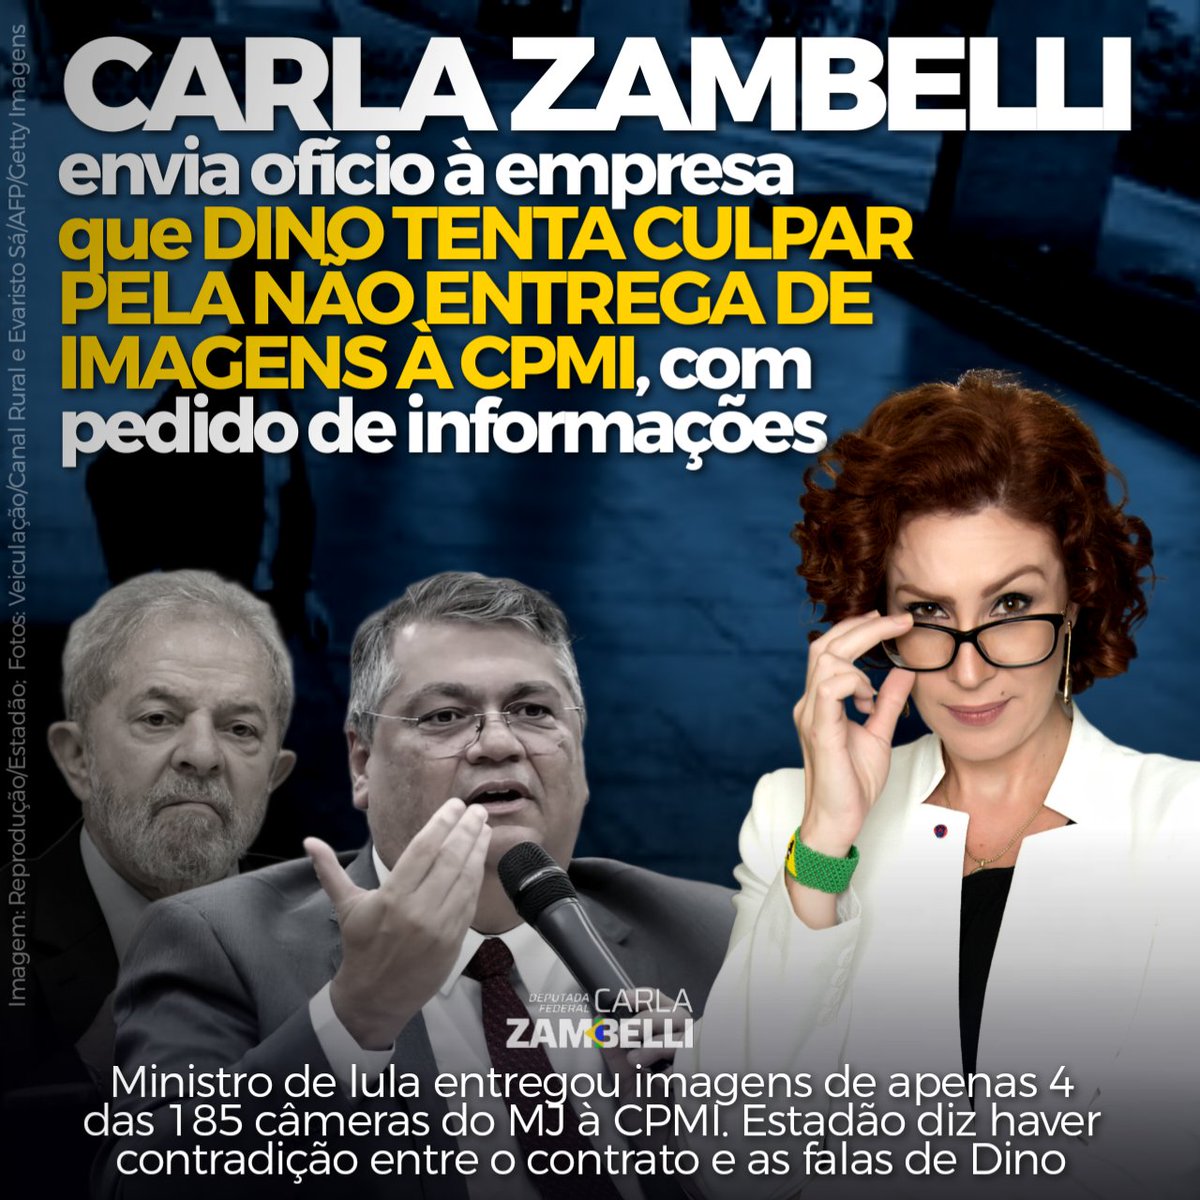 São muitas desculpas, delongas e contradições. O povo brasileiro tem o direito de saber a verdade e lutaremos para que ela prevaleça!